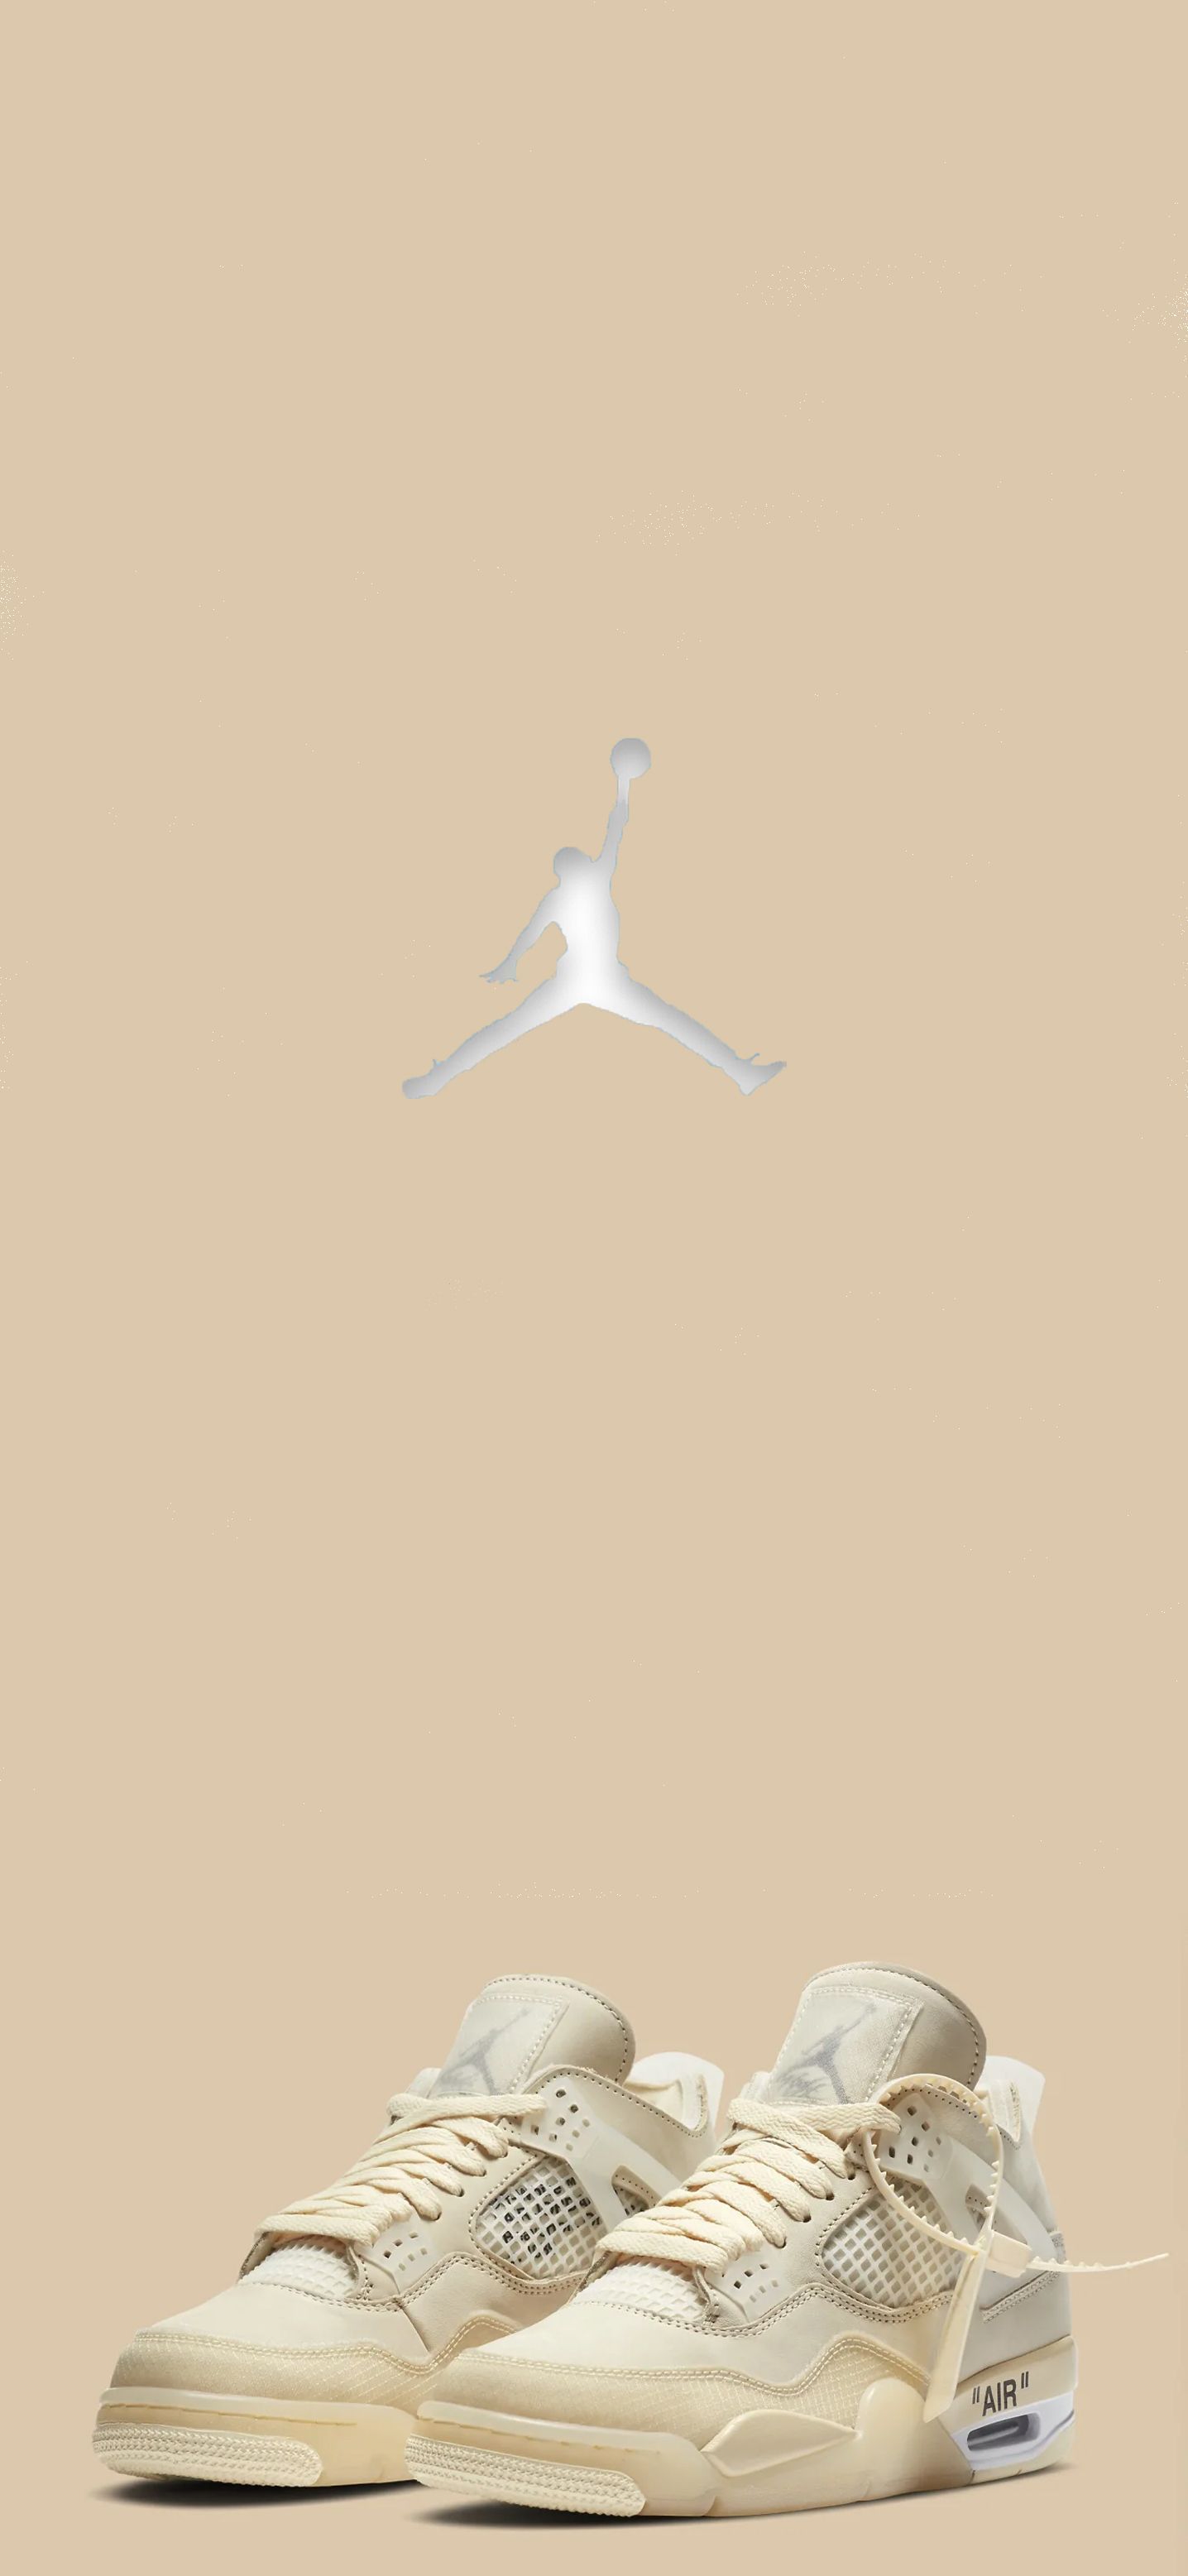 Air Jordan 4 (Off White). Sneakers Wallpaper, Nike Wallpaper, Jordan Shoes Wallpaper